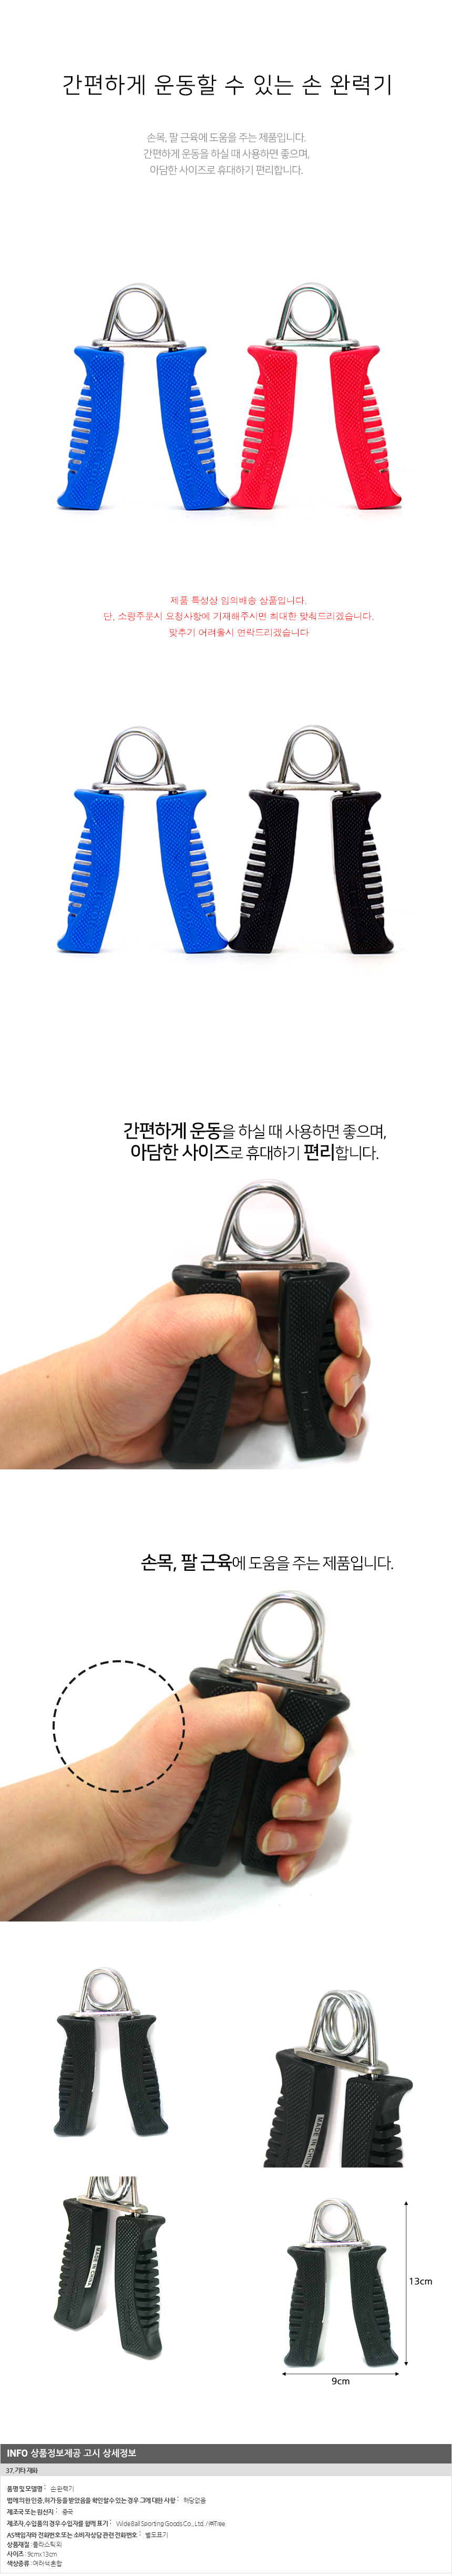 손 완력기/스포츠샵판매용 문구점판매용 팬시점납품용